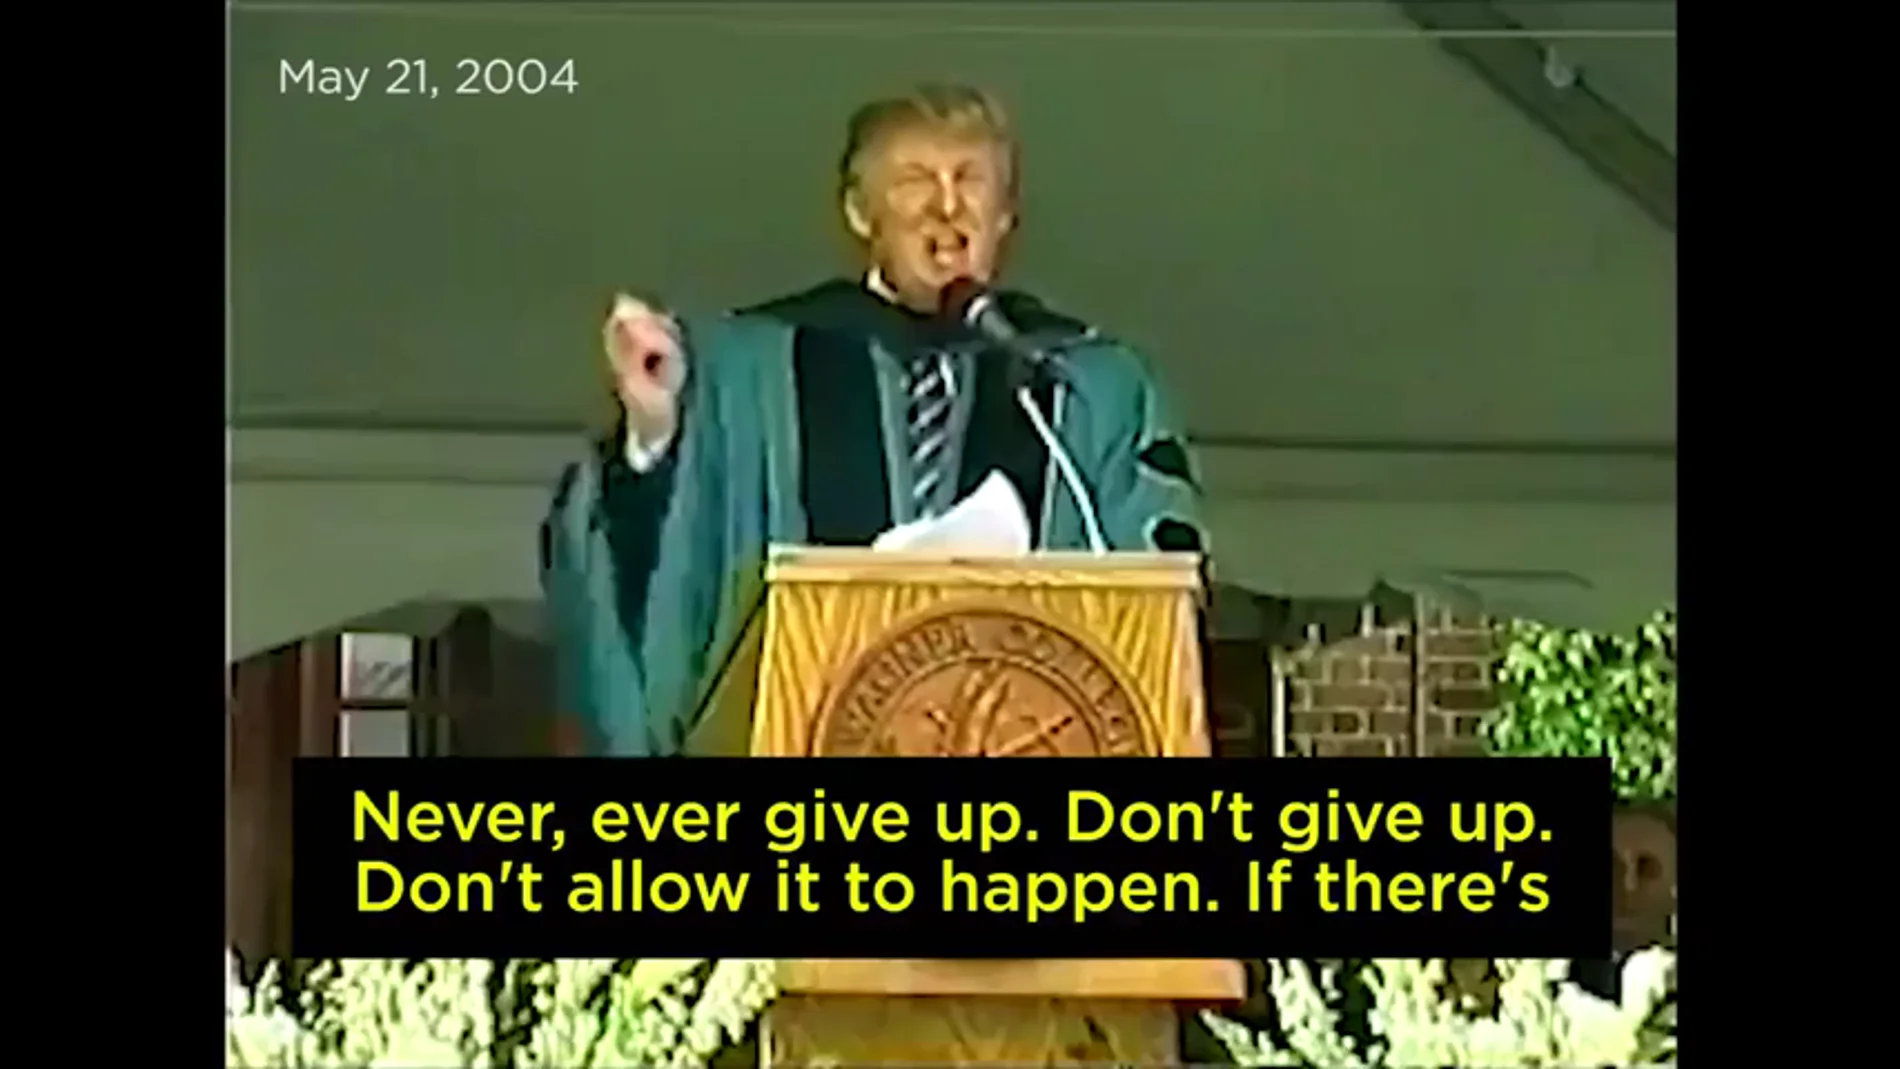 El discurso de Trump en 2004 que contradice al propio Trump: "Si veis un muro, atravesadlo, id al otro lado. Nunca os rindáis"